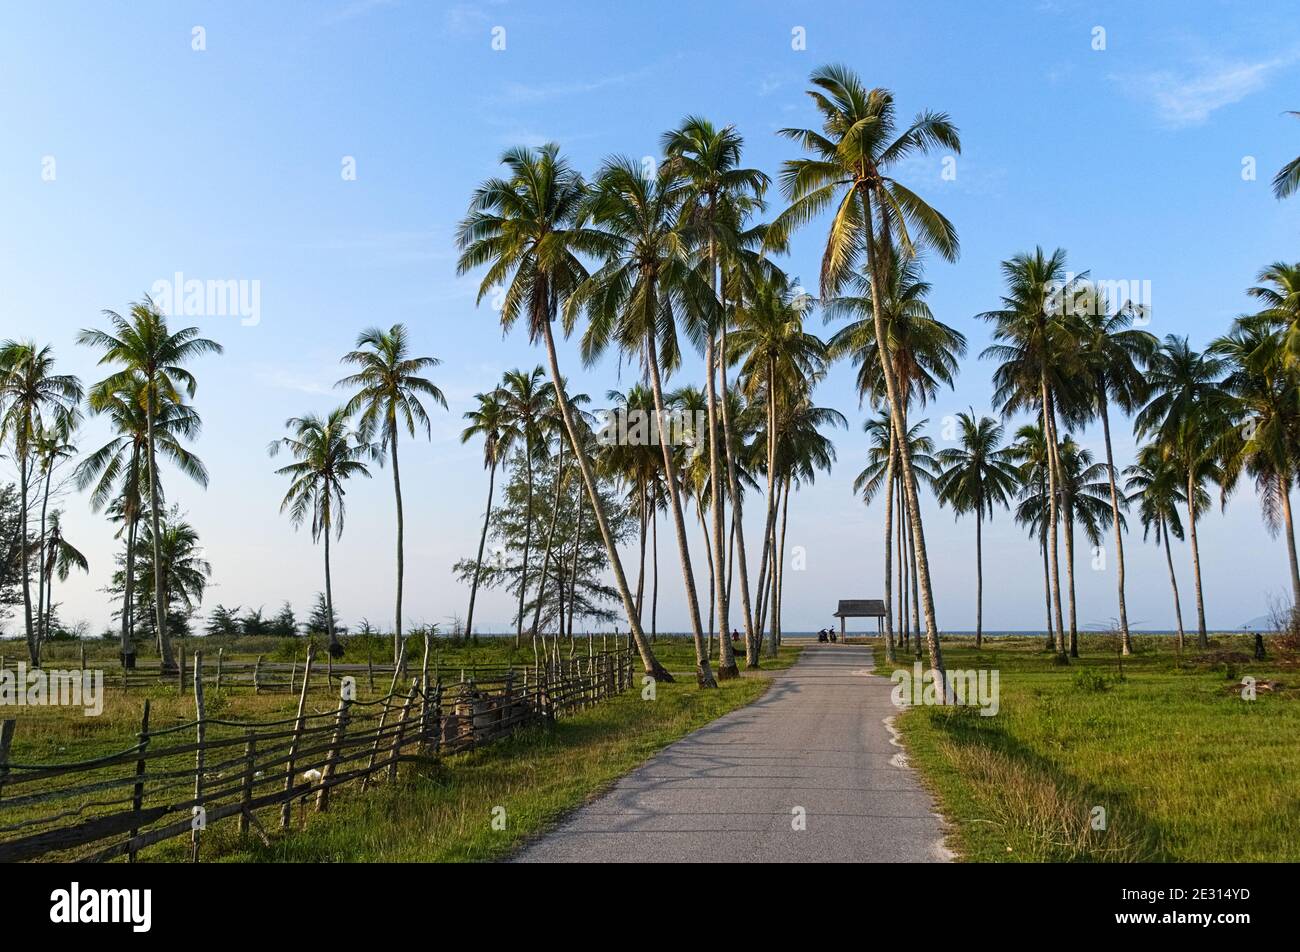 Strada per la spiaggia con palme. Paesaggio tropicale tradizionale. Malesia Foto Stock